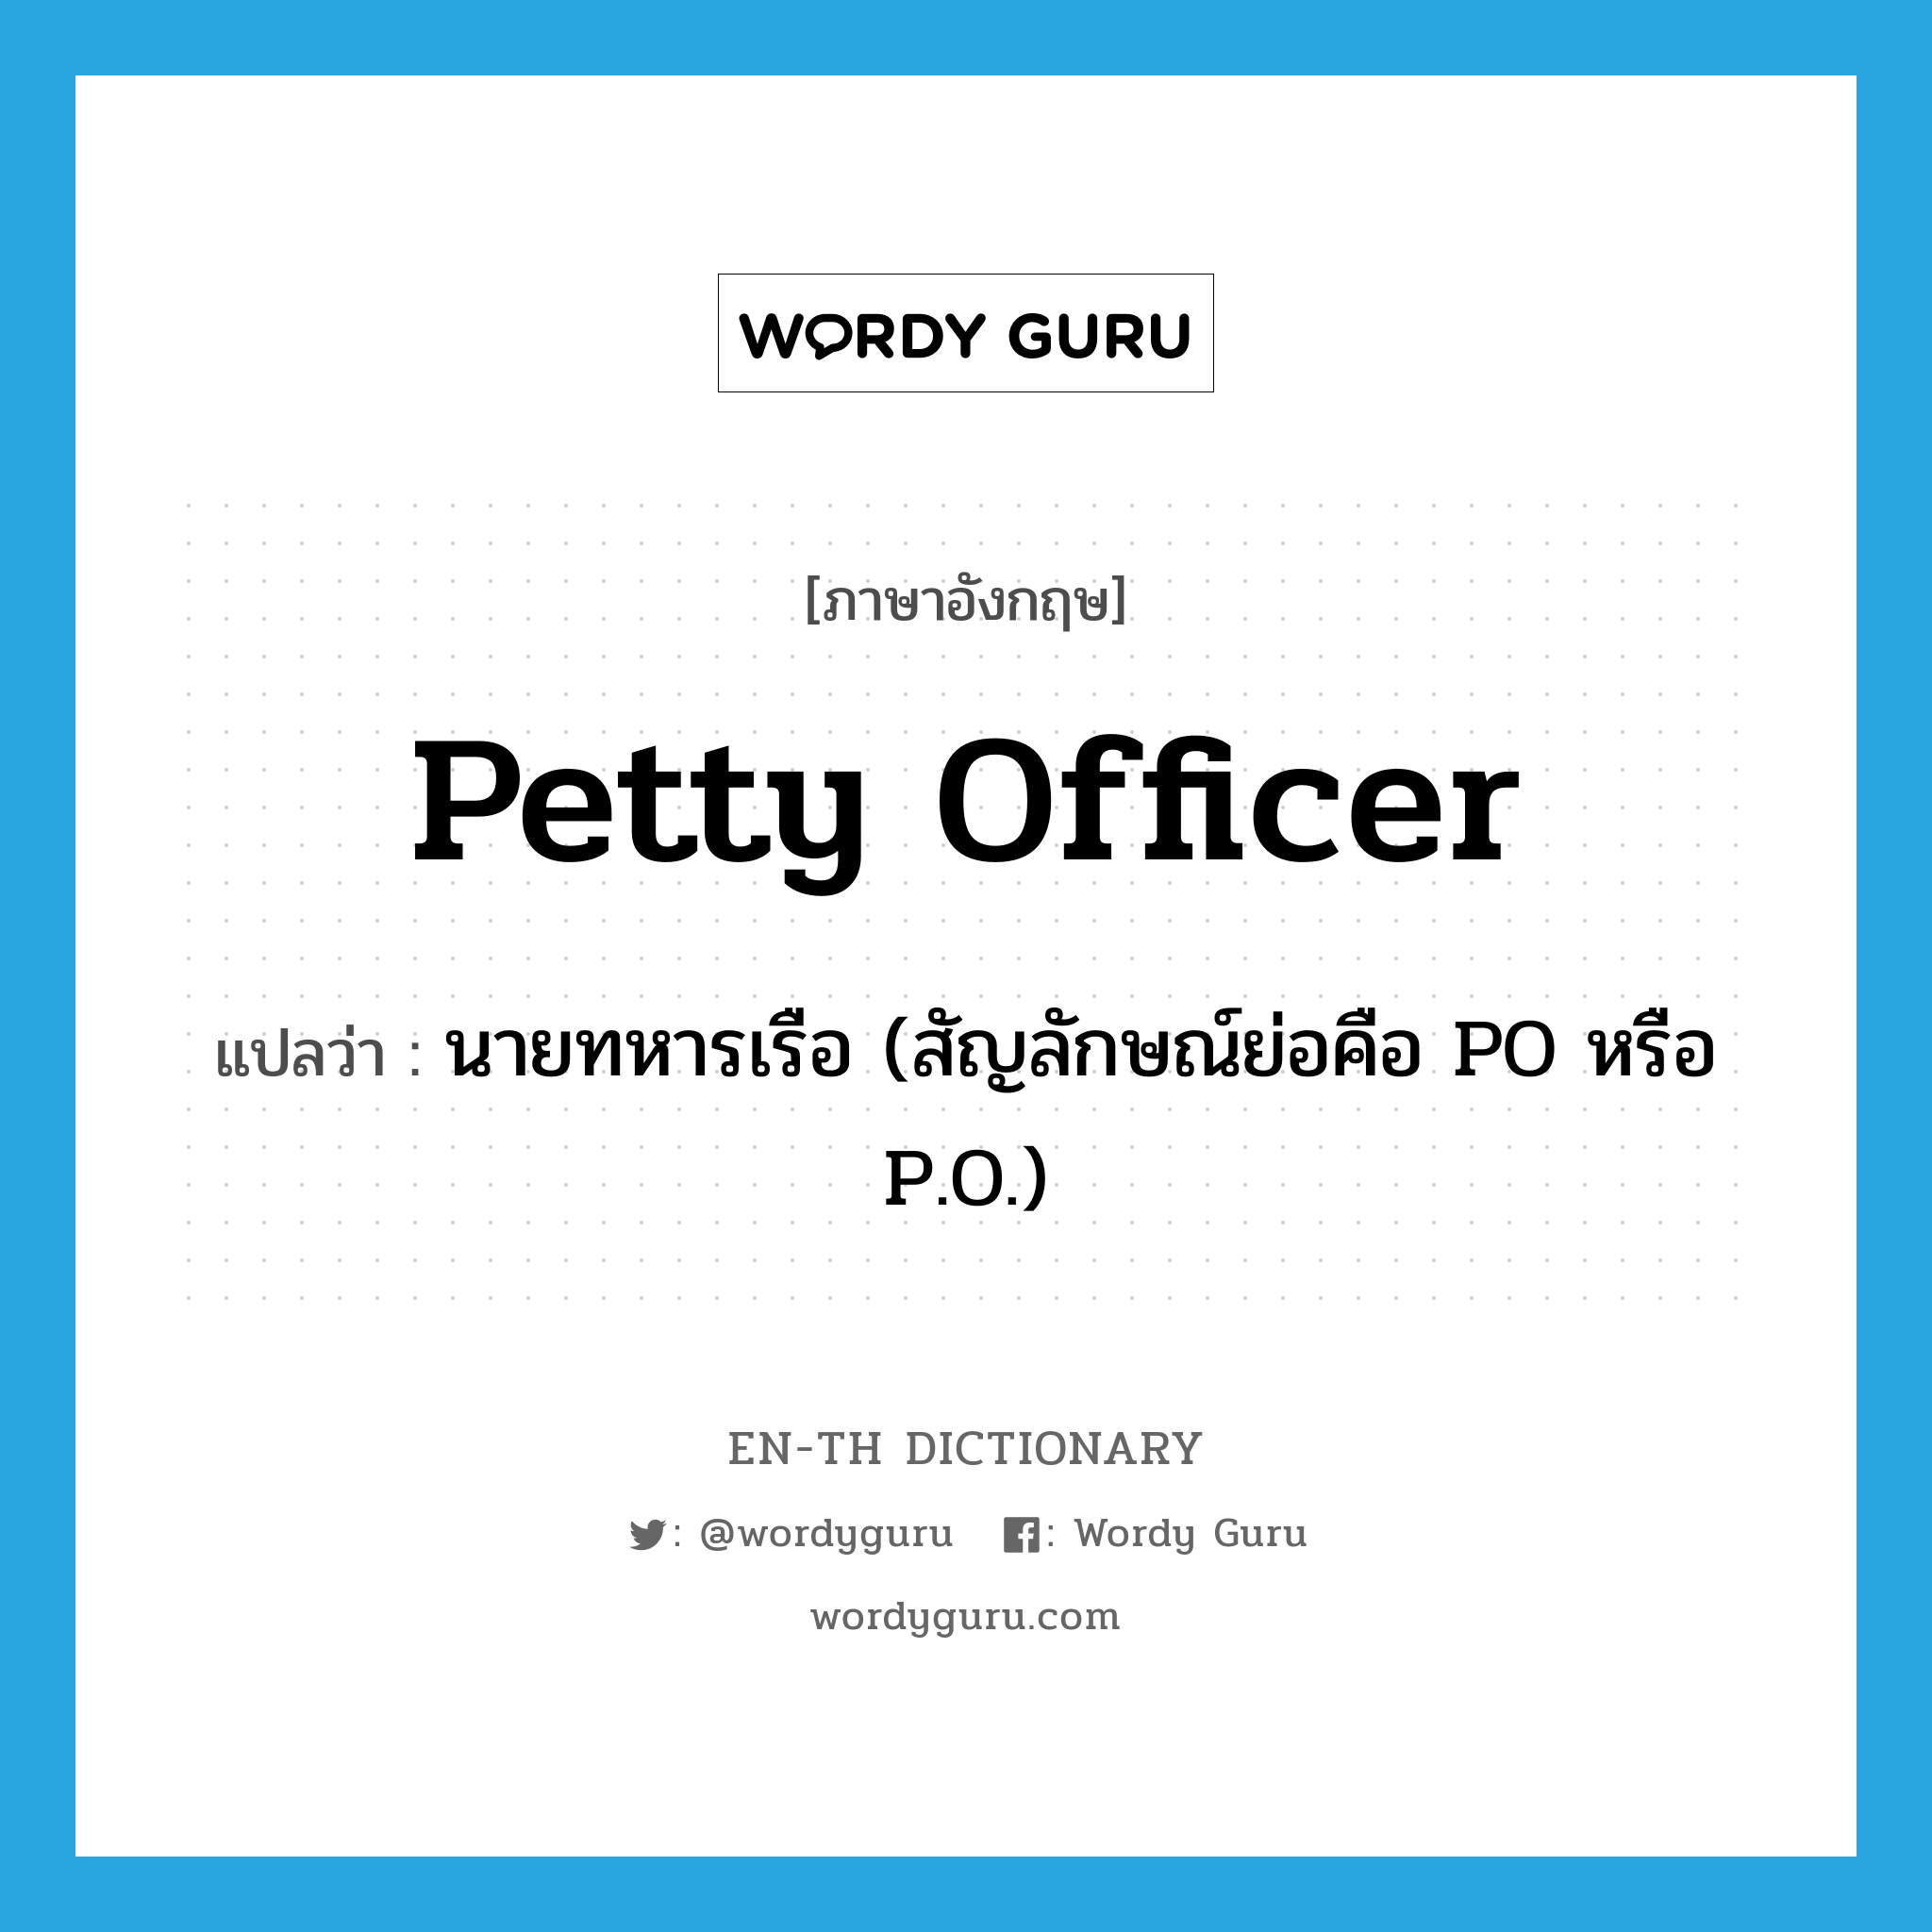 นายทหารเรือ (สัญลักษณ์ย่อคือ PO หรือ P.O.) ภาษาอังกฤษ?, คำศัพท์ภาษาอังกฤษ นายทหารเรือ (สัญลักษณ์ย่อคือ PO หรือ P.O.) แปลว่า petty officer ประเภท N หมวด N